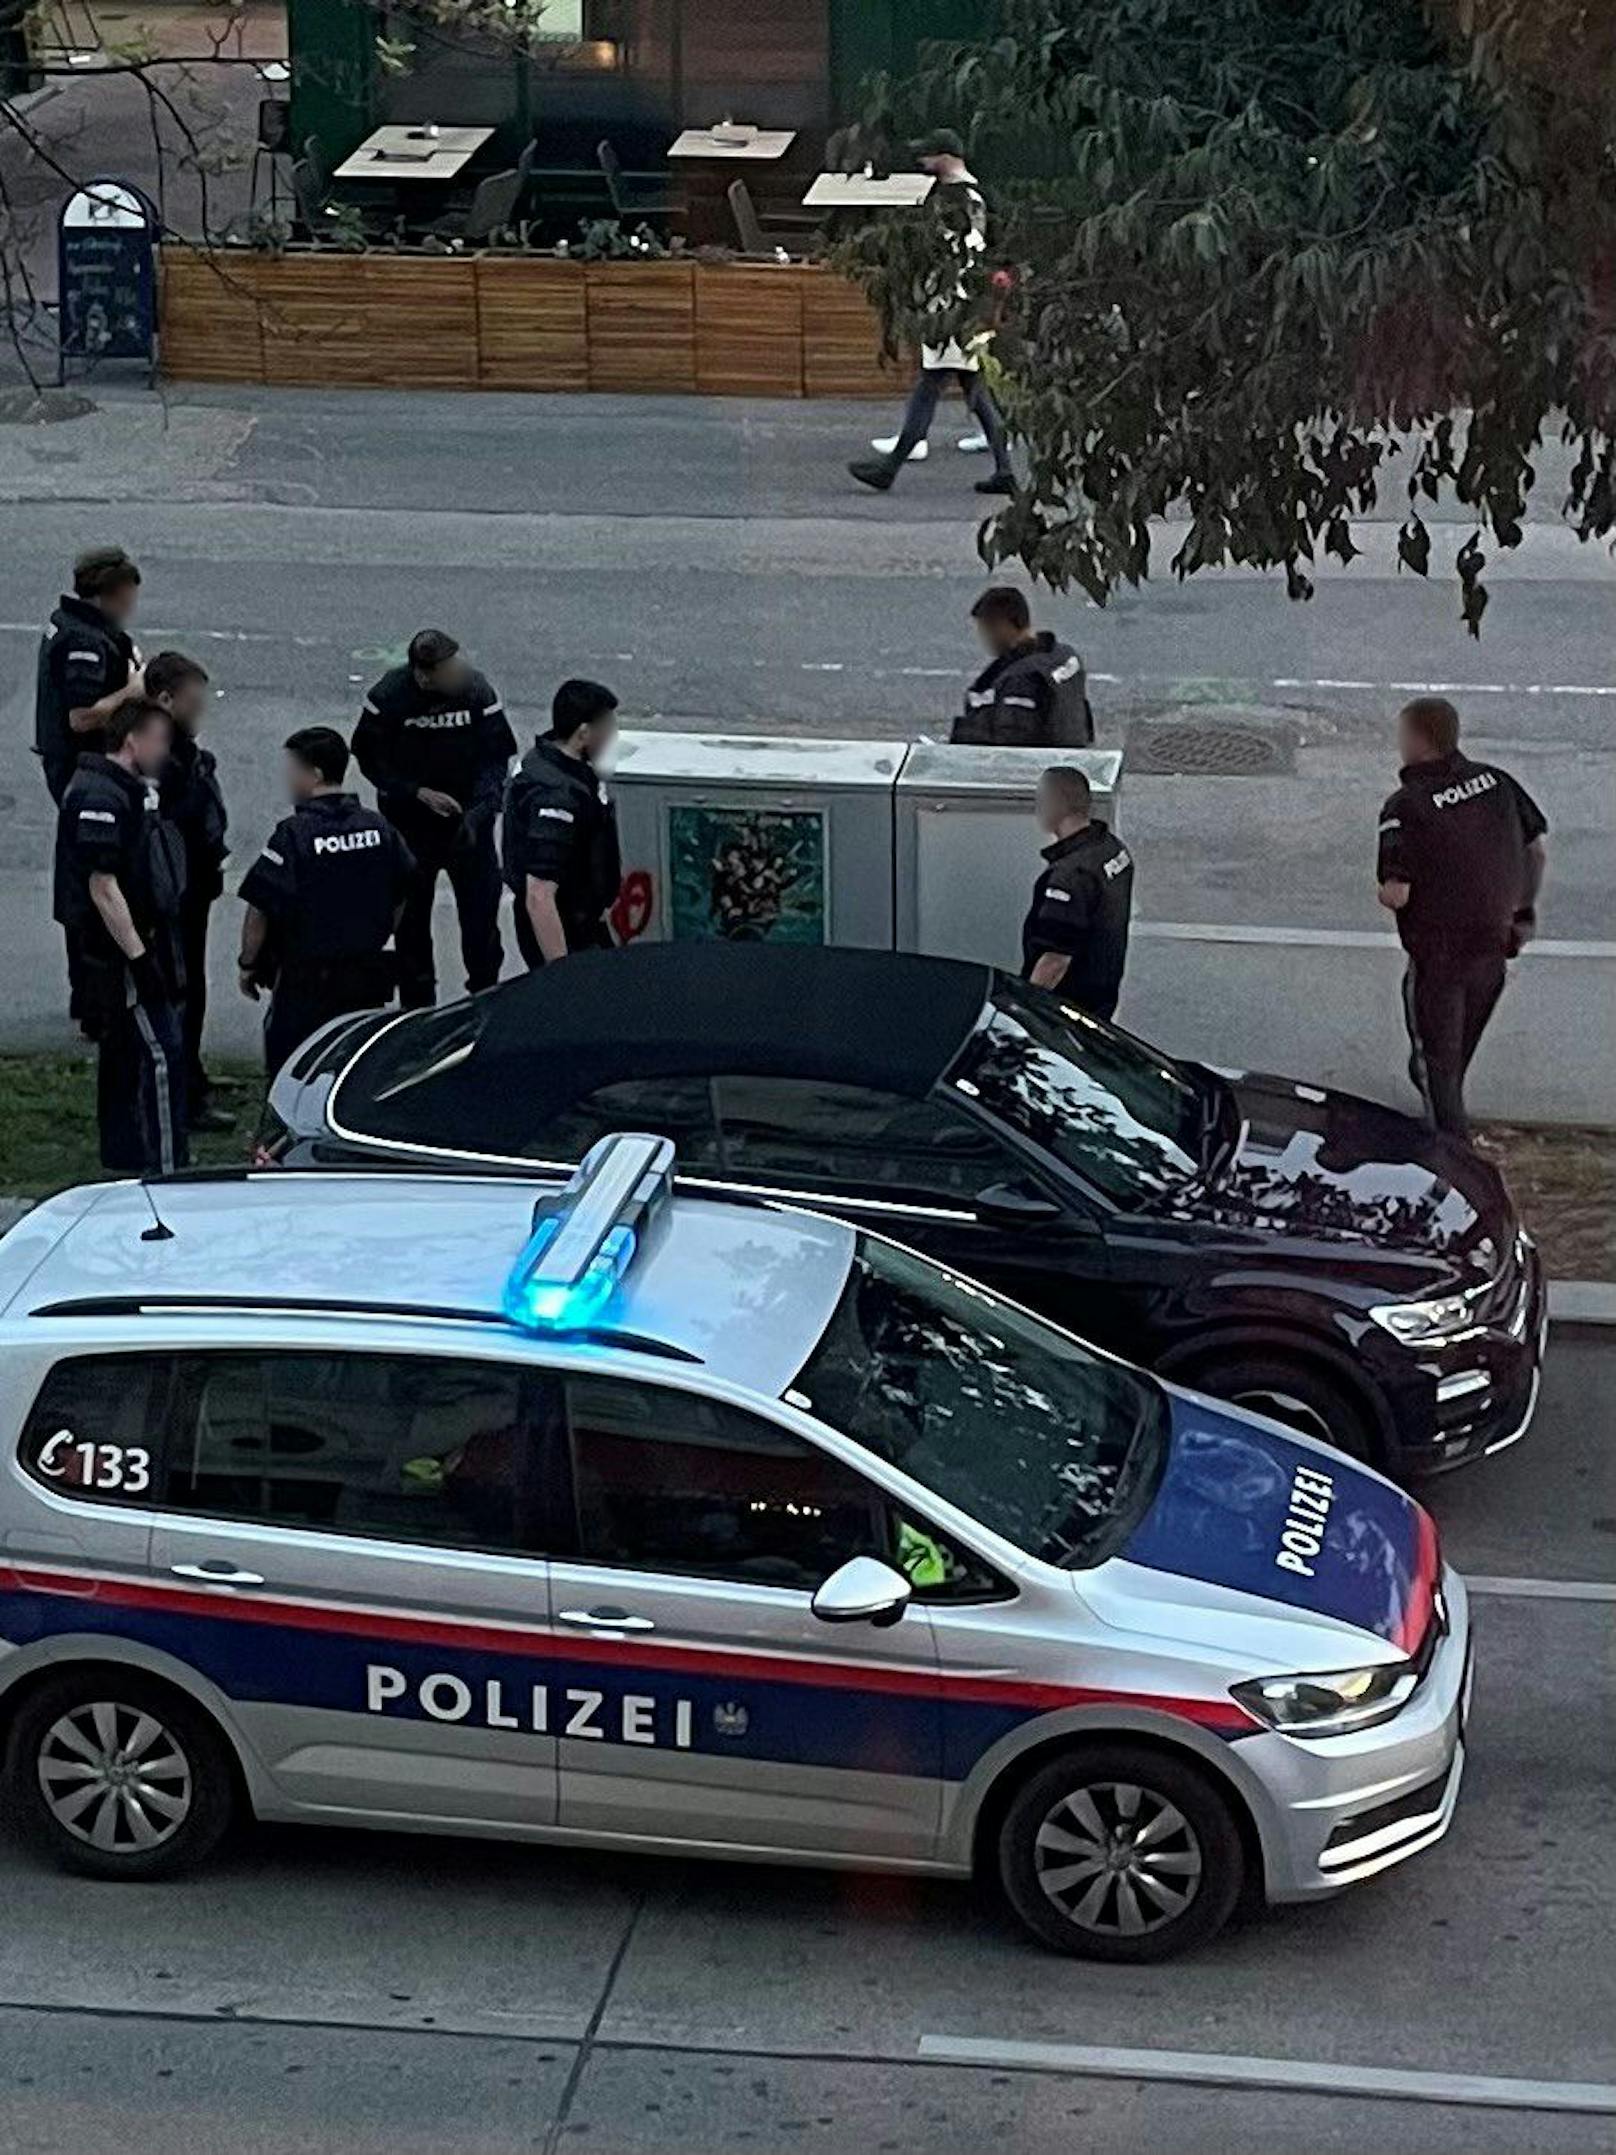 Spektakulärer Einsatz in Wien-Mariahilf: Polizei nimmt verdächtigen Mann fest.